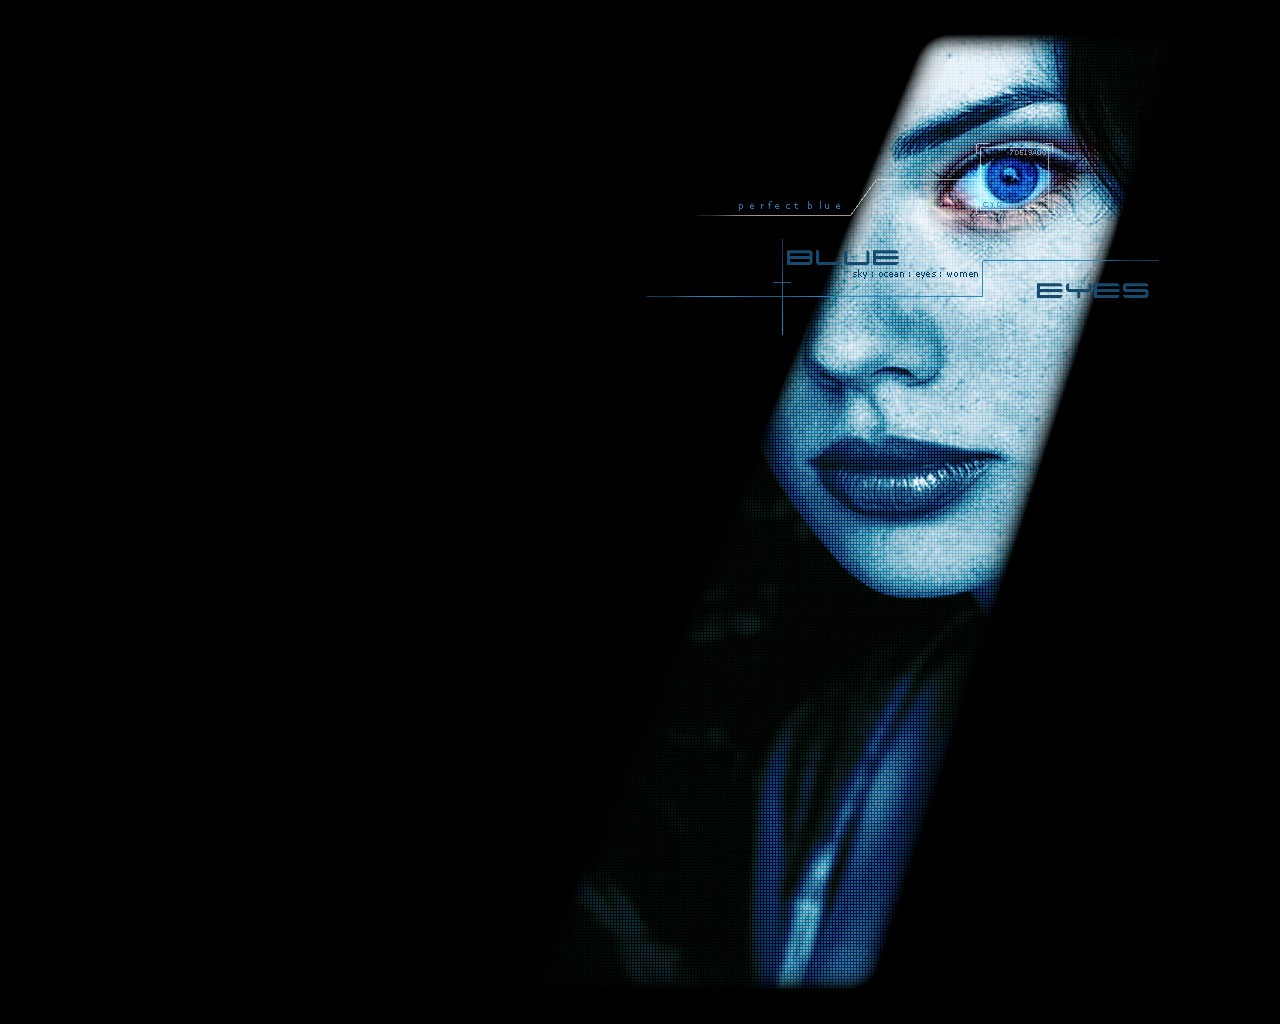 People 1280x1024 blue blue eyes women eyes face model dark digital art looking at viewer simple background black background